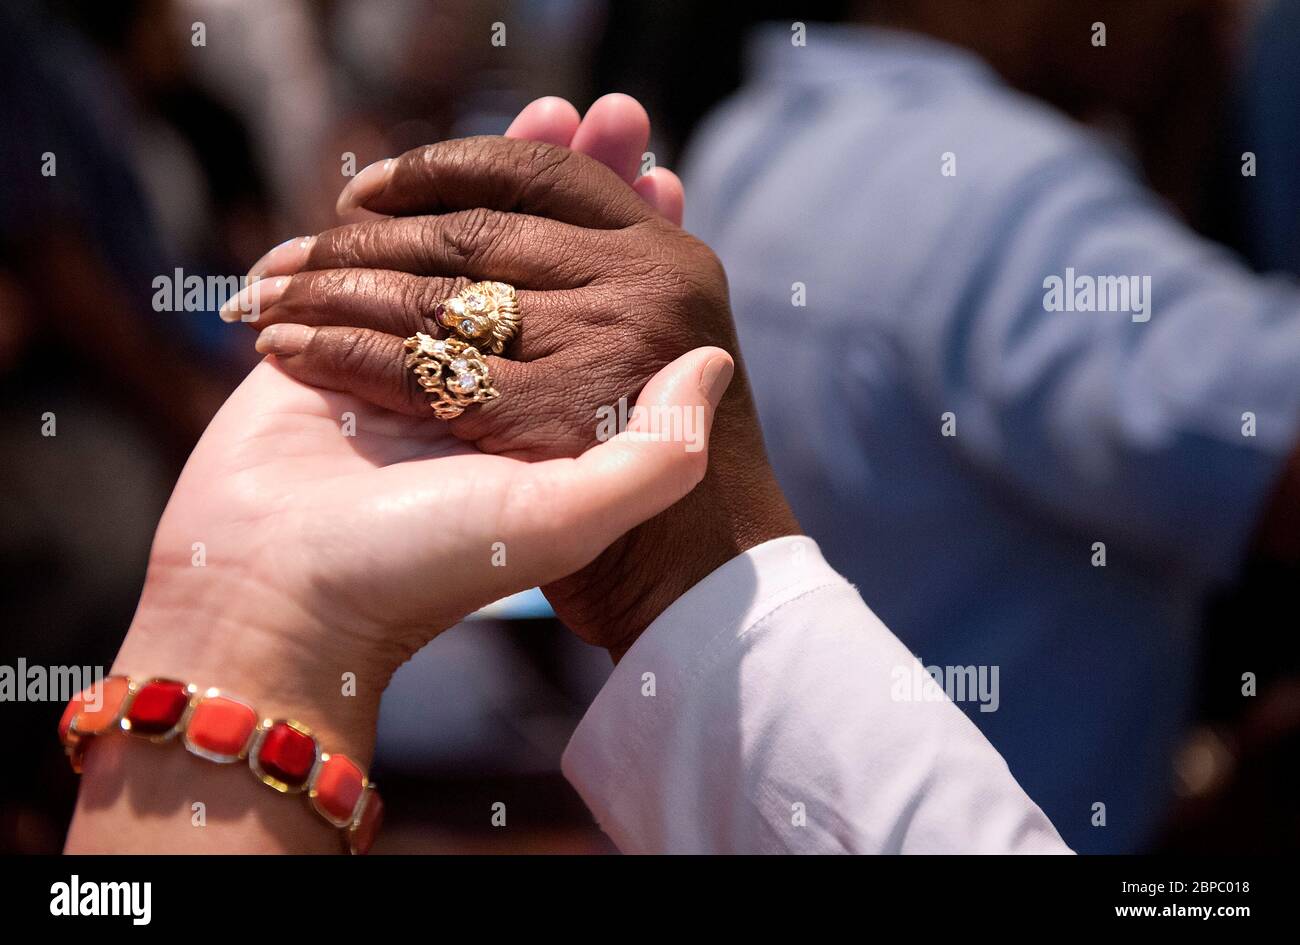 Les paroissiens de différentes races se joignent à la main pendant la messe à STS. Paroisse catholique de Teresa et Bridget à Saint-Louis Missouri, États-Unis. Banque D'Images